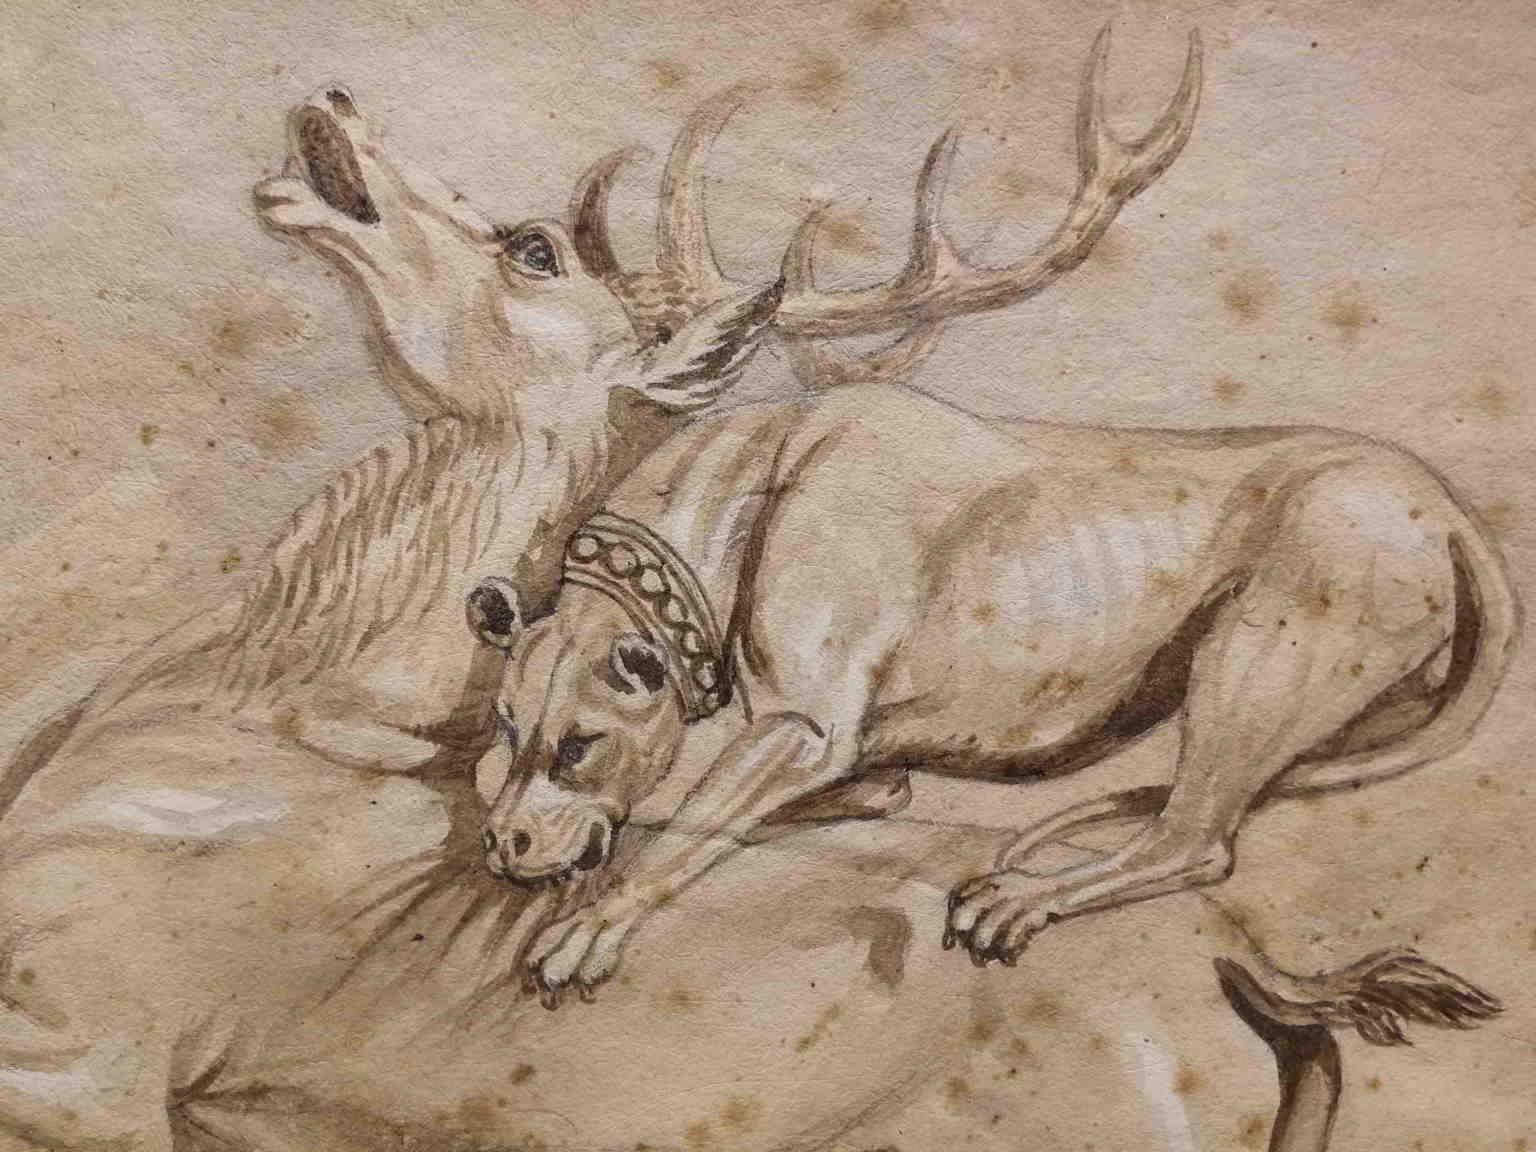 Artista italiano del XIX secolo, disegno figurativo con scena di caccia 